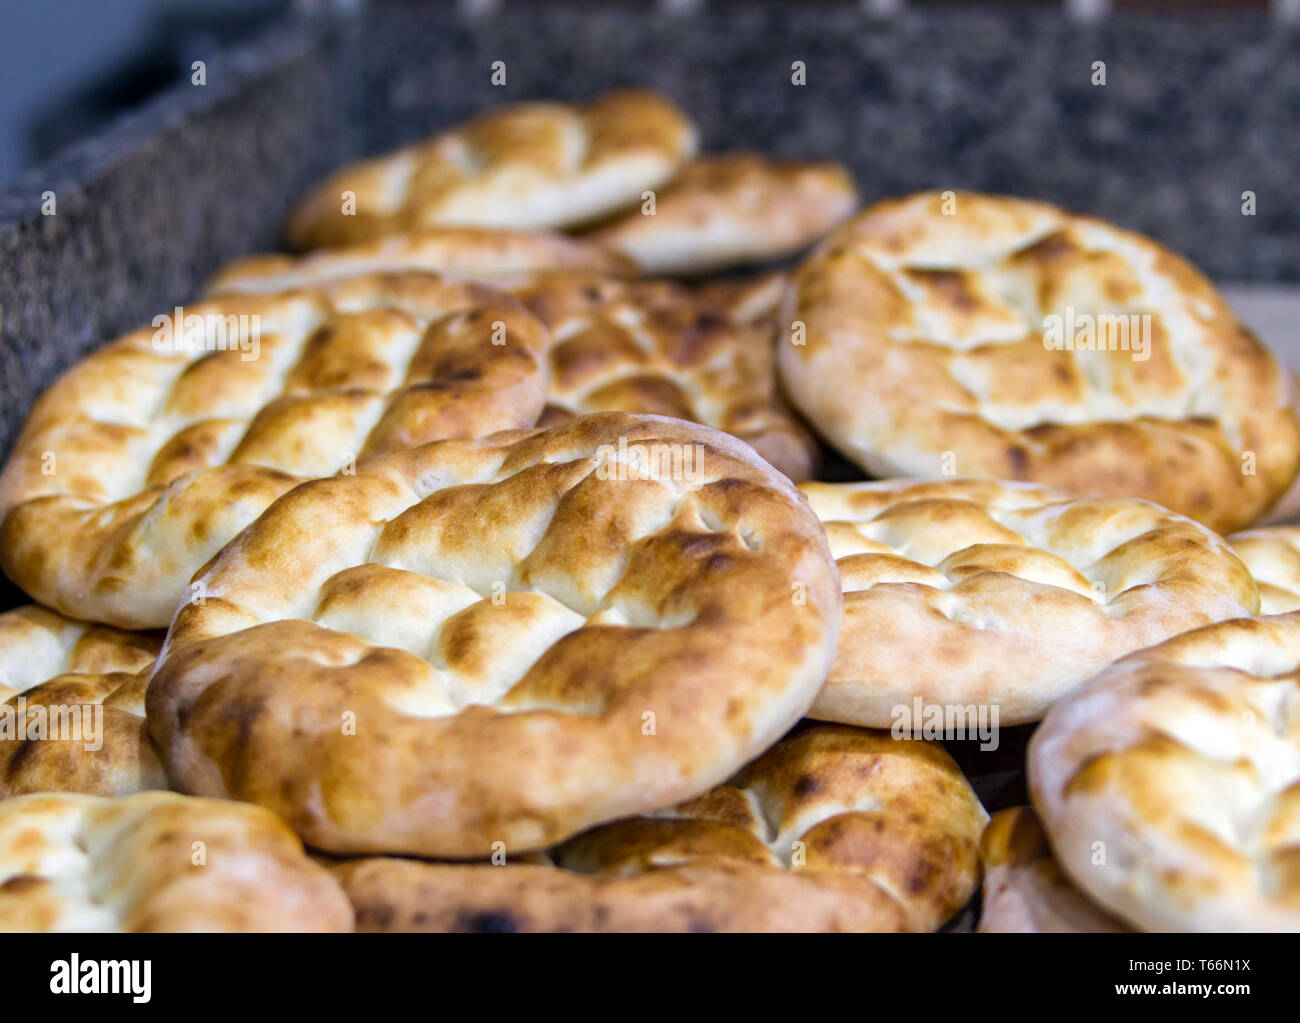 Frisch gebackenes Brot nach dem usbekischen Rezept auf der Bäckerei Tabelle mit selektiven Fokus Stockfoto